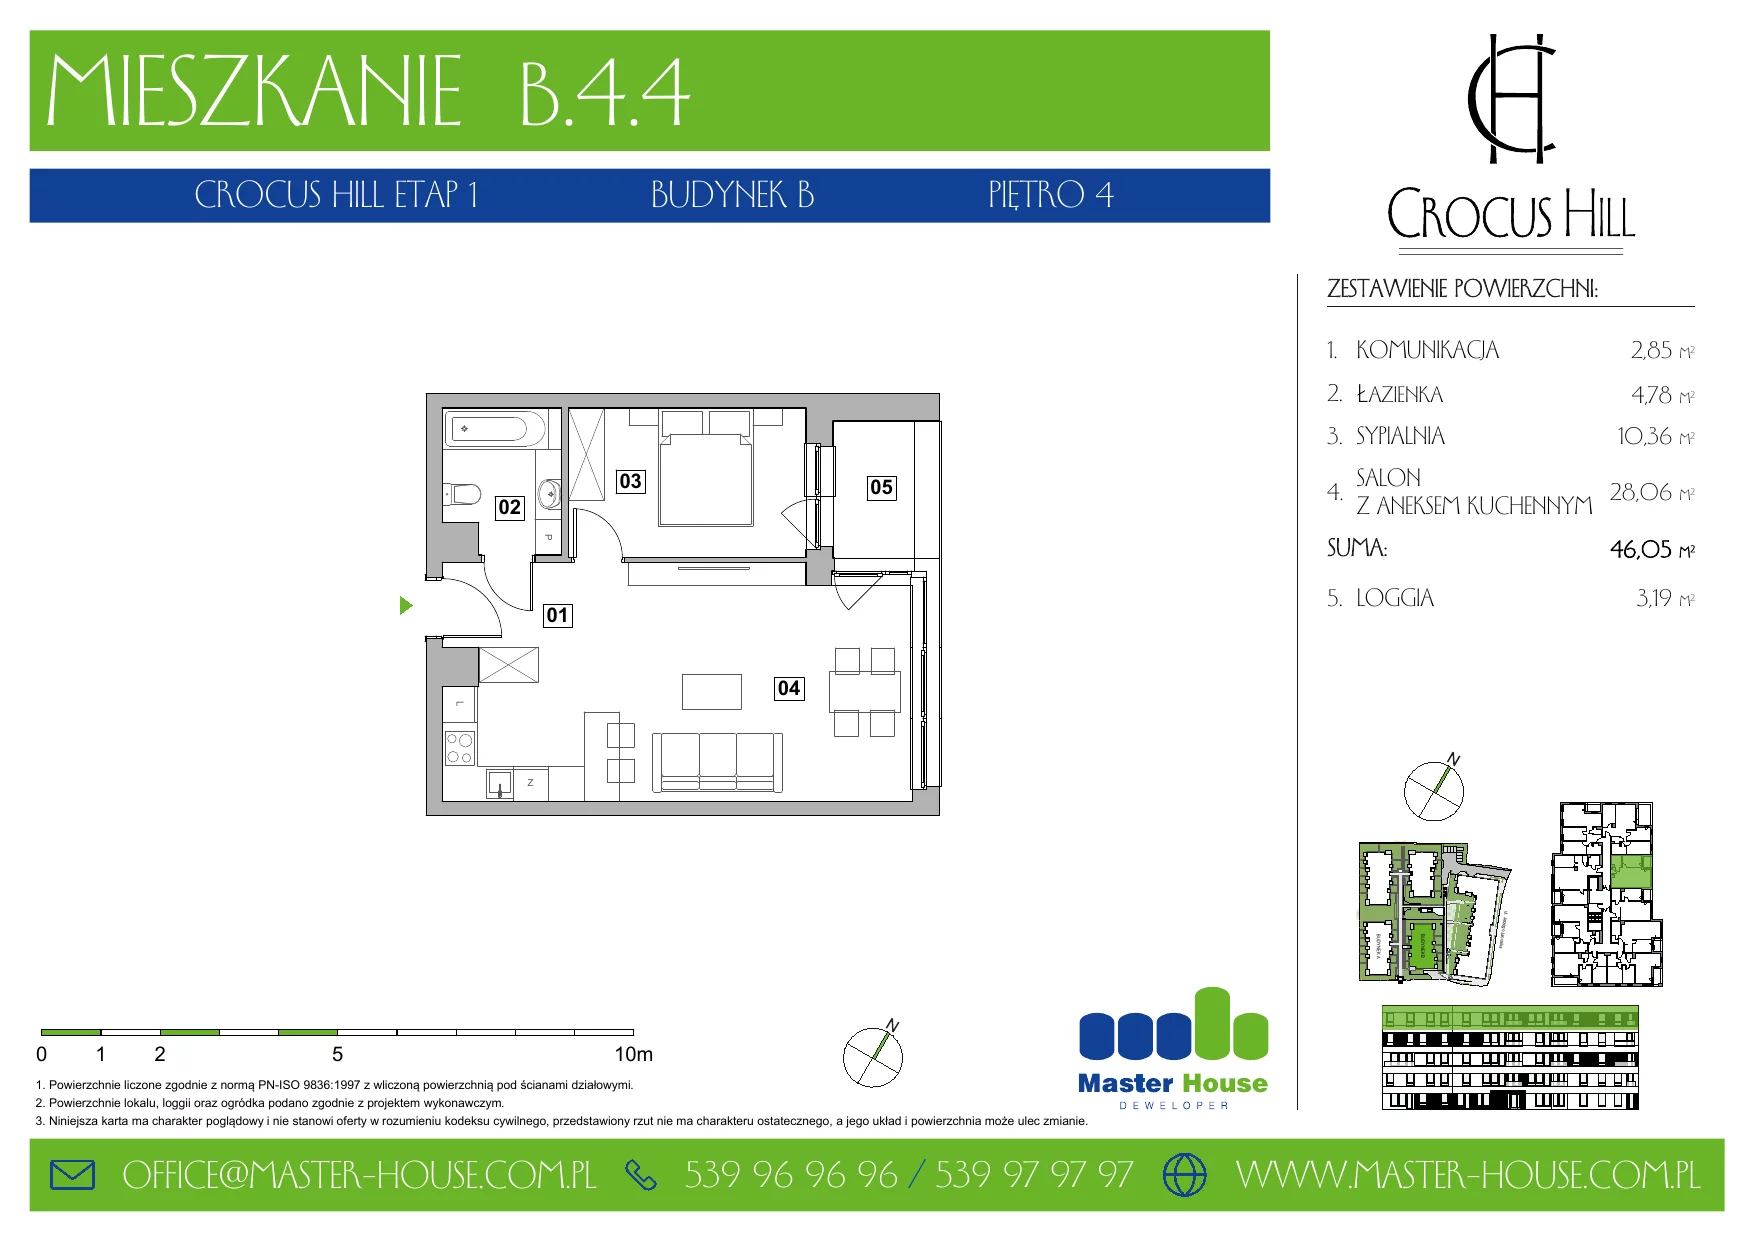 Mieszkanie 46,05 m², piętro 4, oferta nr B.4.4, Crocus Hill, Szczecin, Śródmieście, ul. Jerzego Janosika 2, 2A, 3, 3A